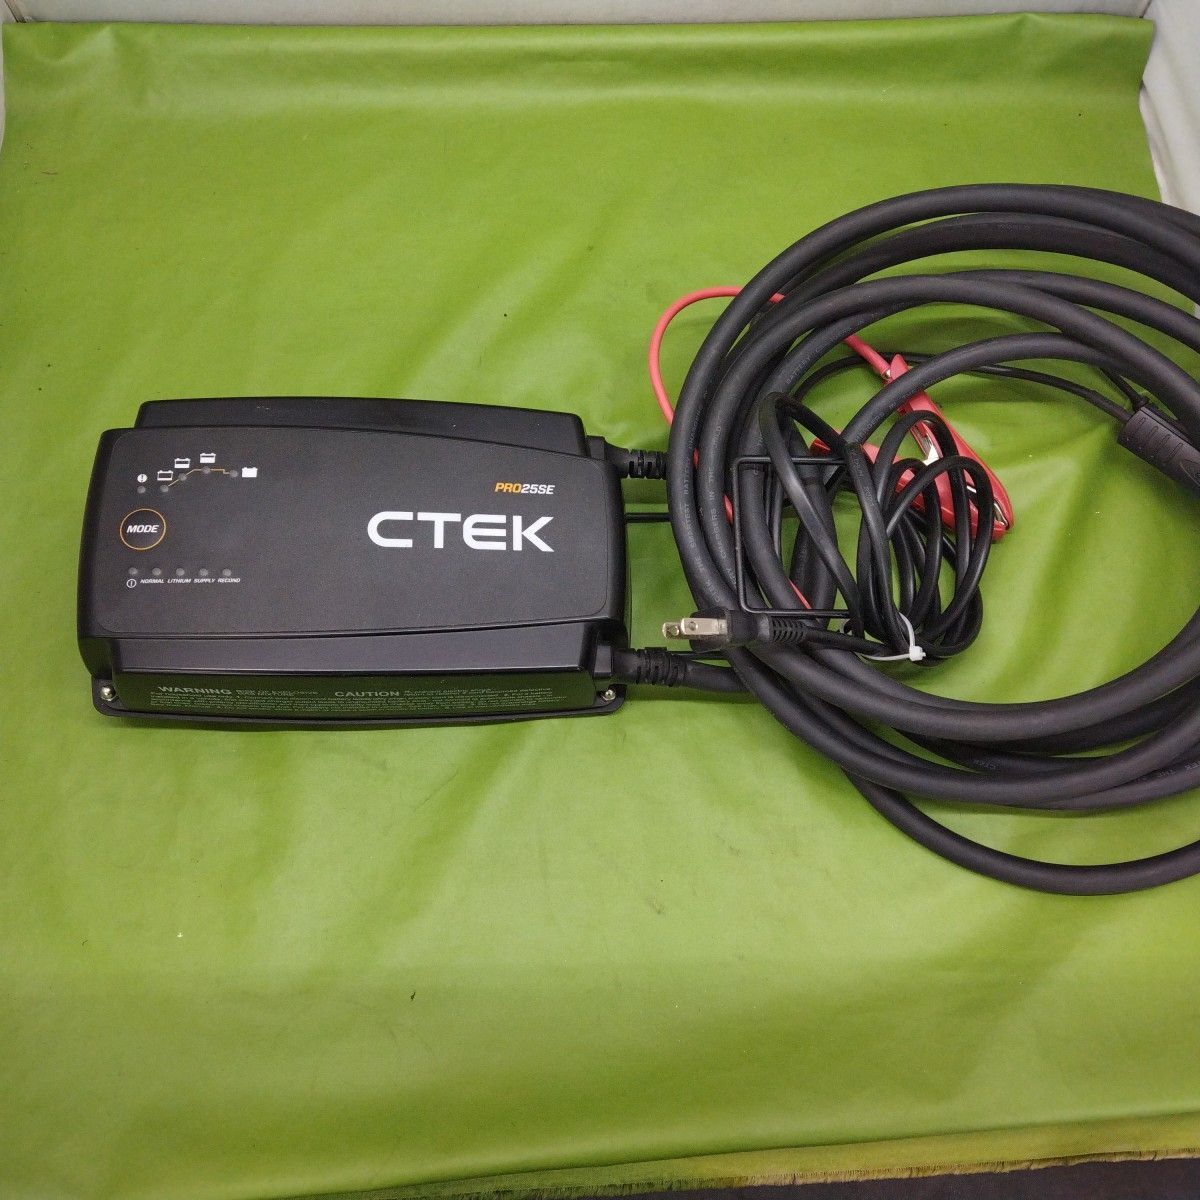 CTEK シーテック バッテリーチャージャー バッテリー充電器 PRO25SE JP ◆3116/工具宮竹店_画像1